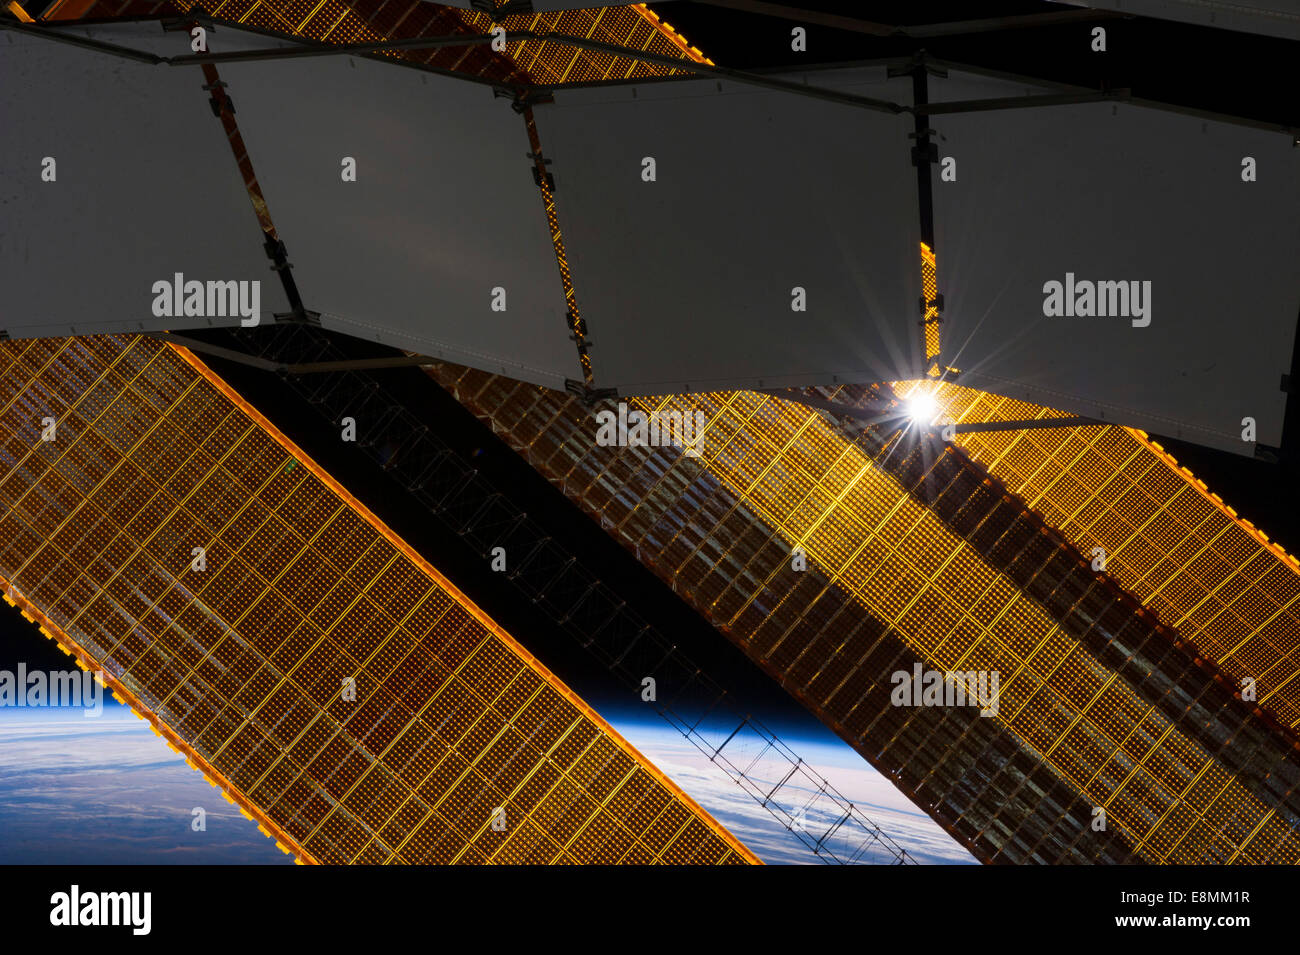 2 gennaio 2014 - Il sole splende attraverso una struttura reticolare a base di pannello del radiatore e di una primaria solar array pannello sulla terra-orbiting Inte Foto Stock